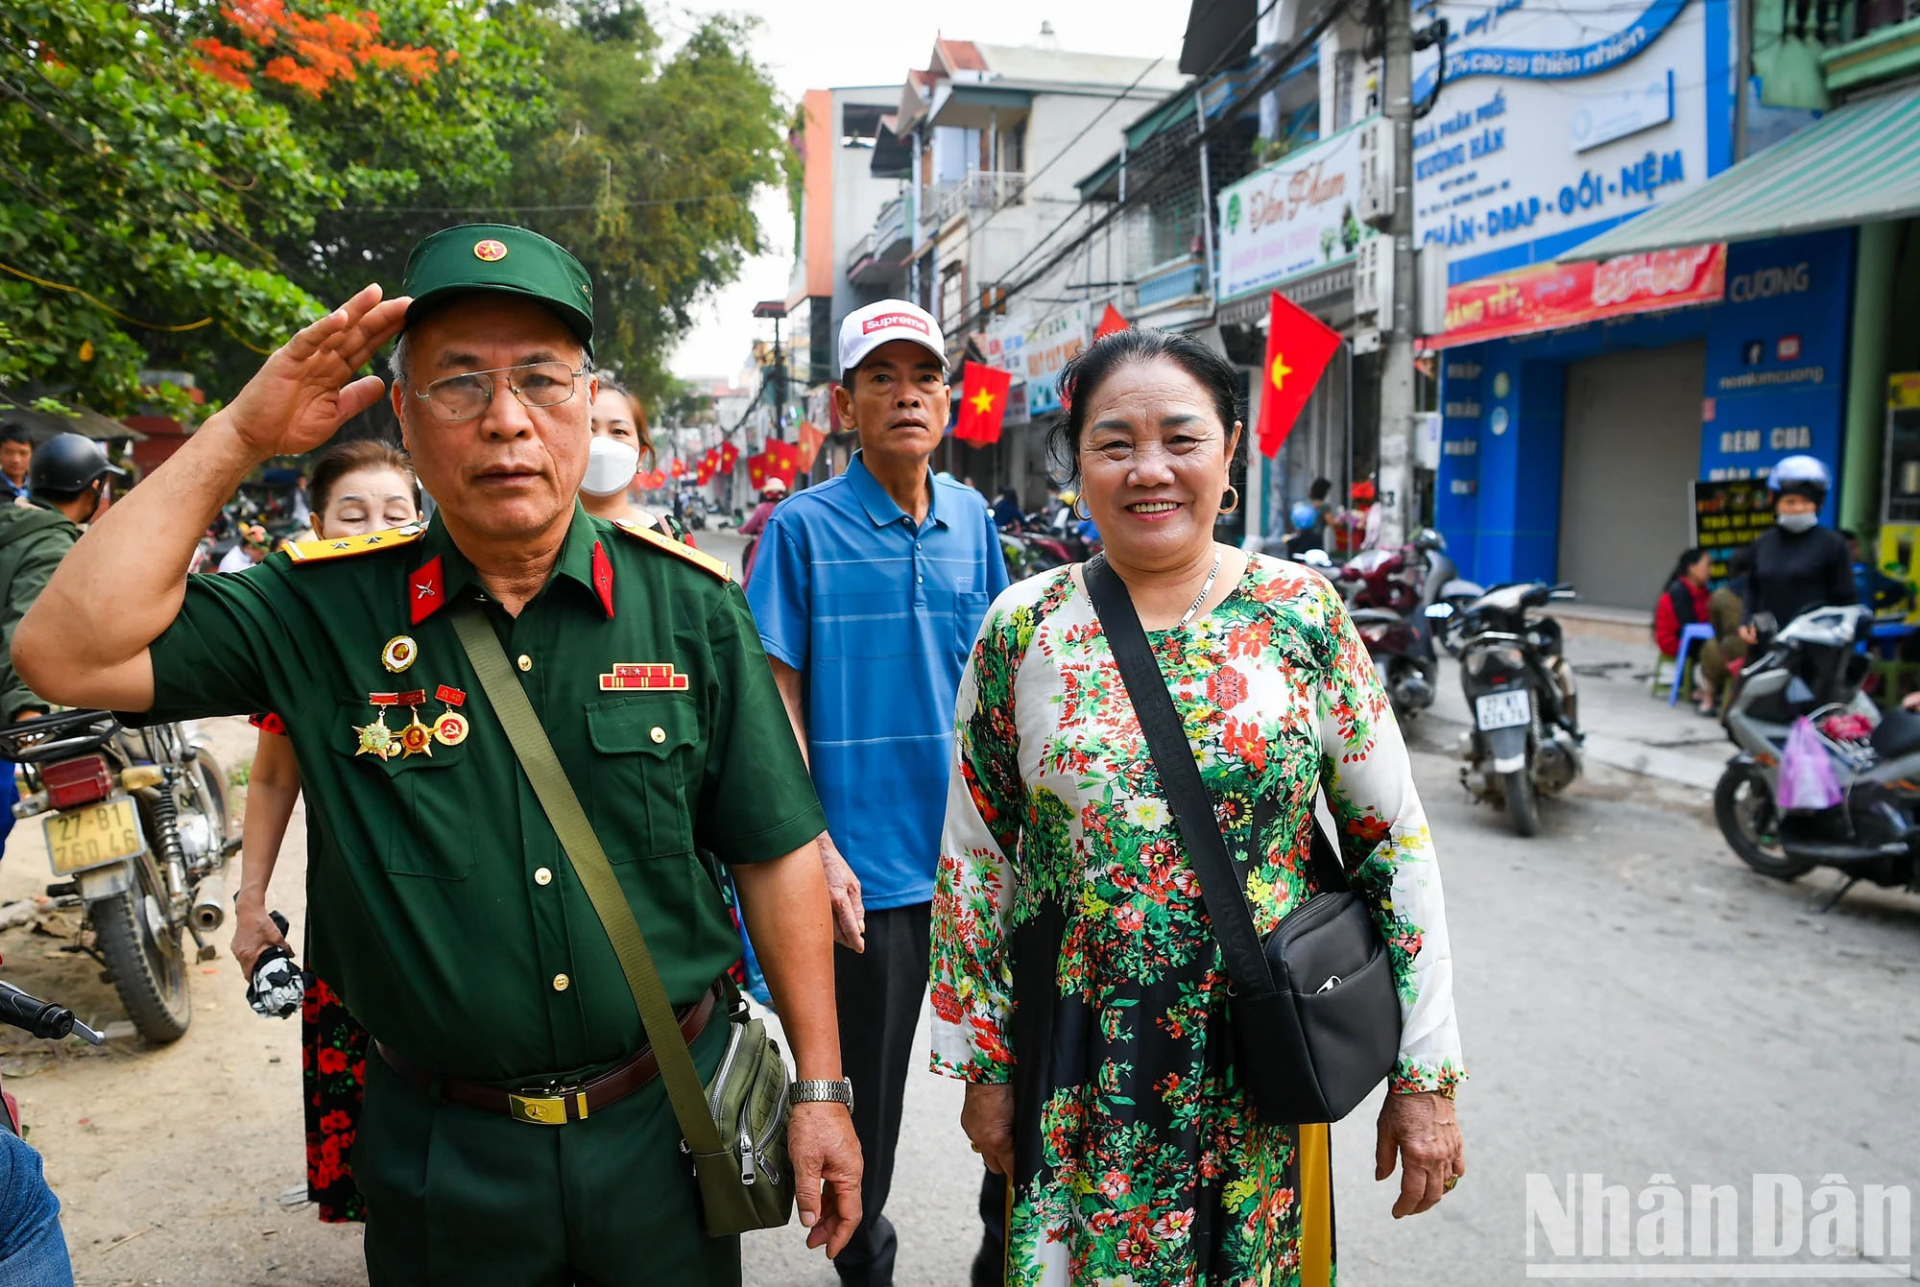 Ông Kim Đình Thi, năm nay đã 75 tuổi. Ông Thi là cựu chiến binh tới từ Hải Dương. Dịp này, ông cùng vợ lên Điện Biên vừa để về nguồn, vừa để được hòa mình vào ngày kỷ niệm trọng đại của dân tộc.